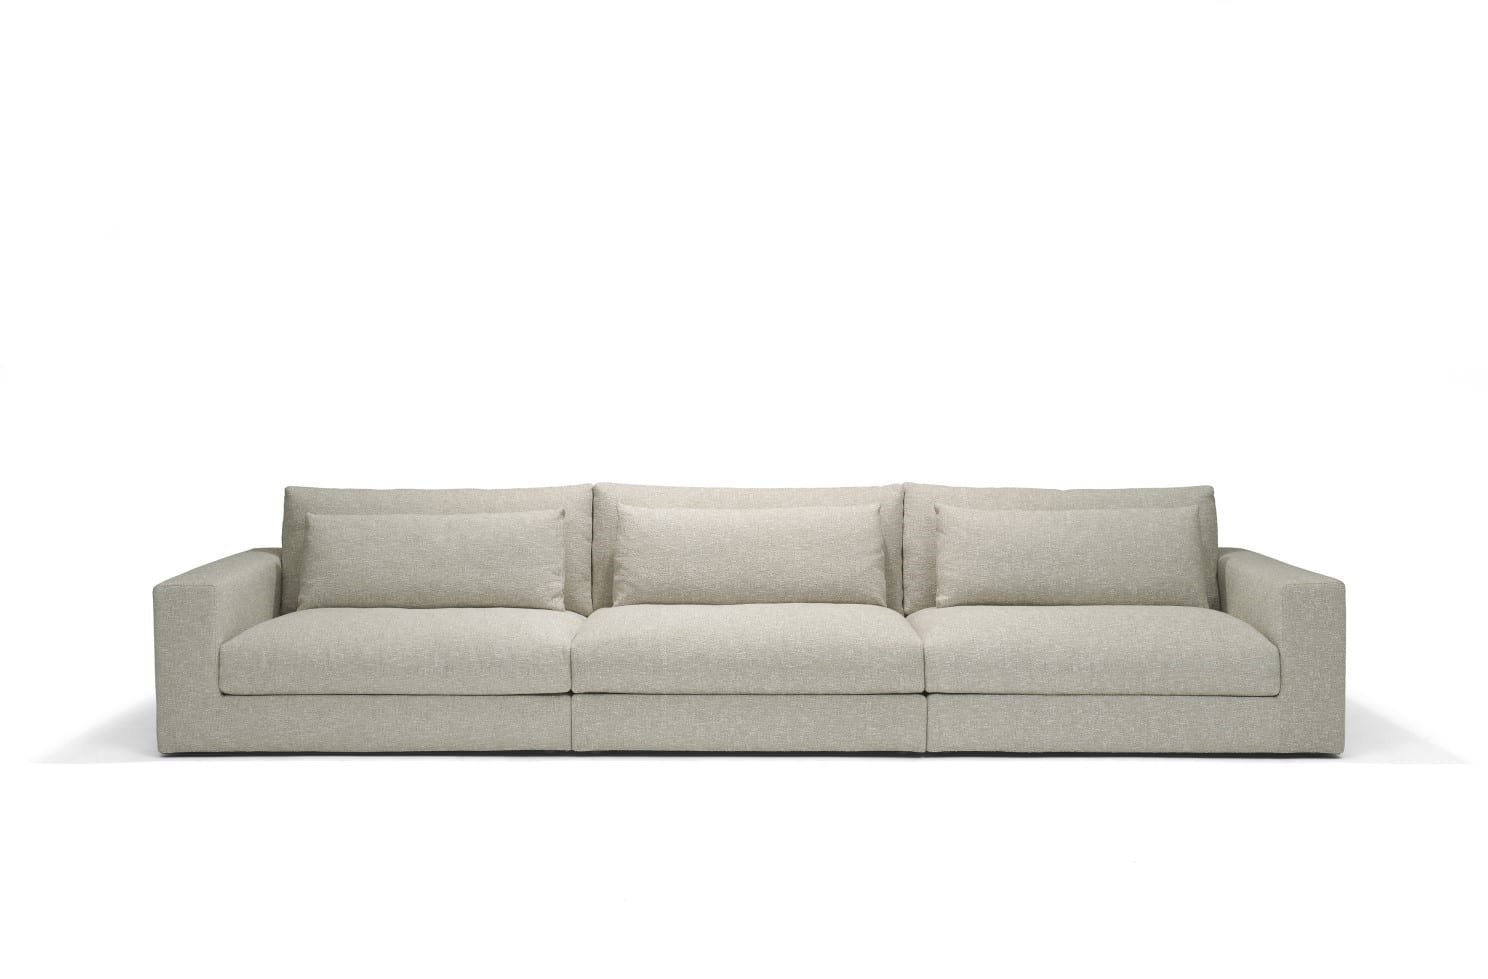 Linteloo-Studio-sofa-1-uitsnede.jpg